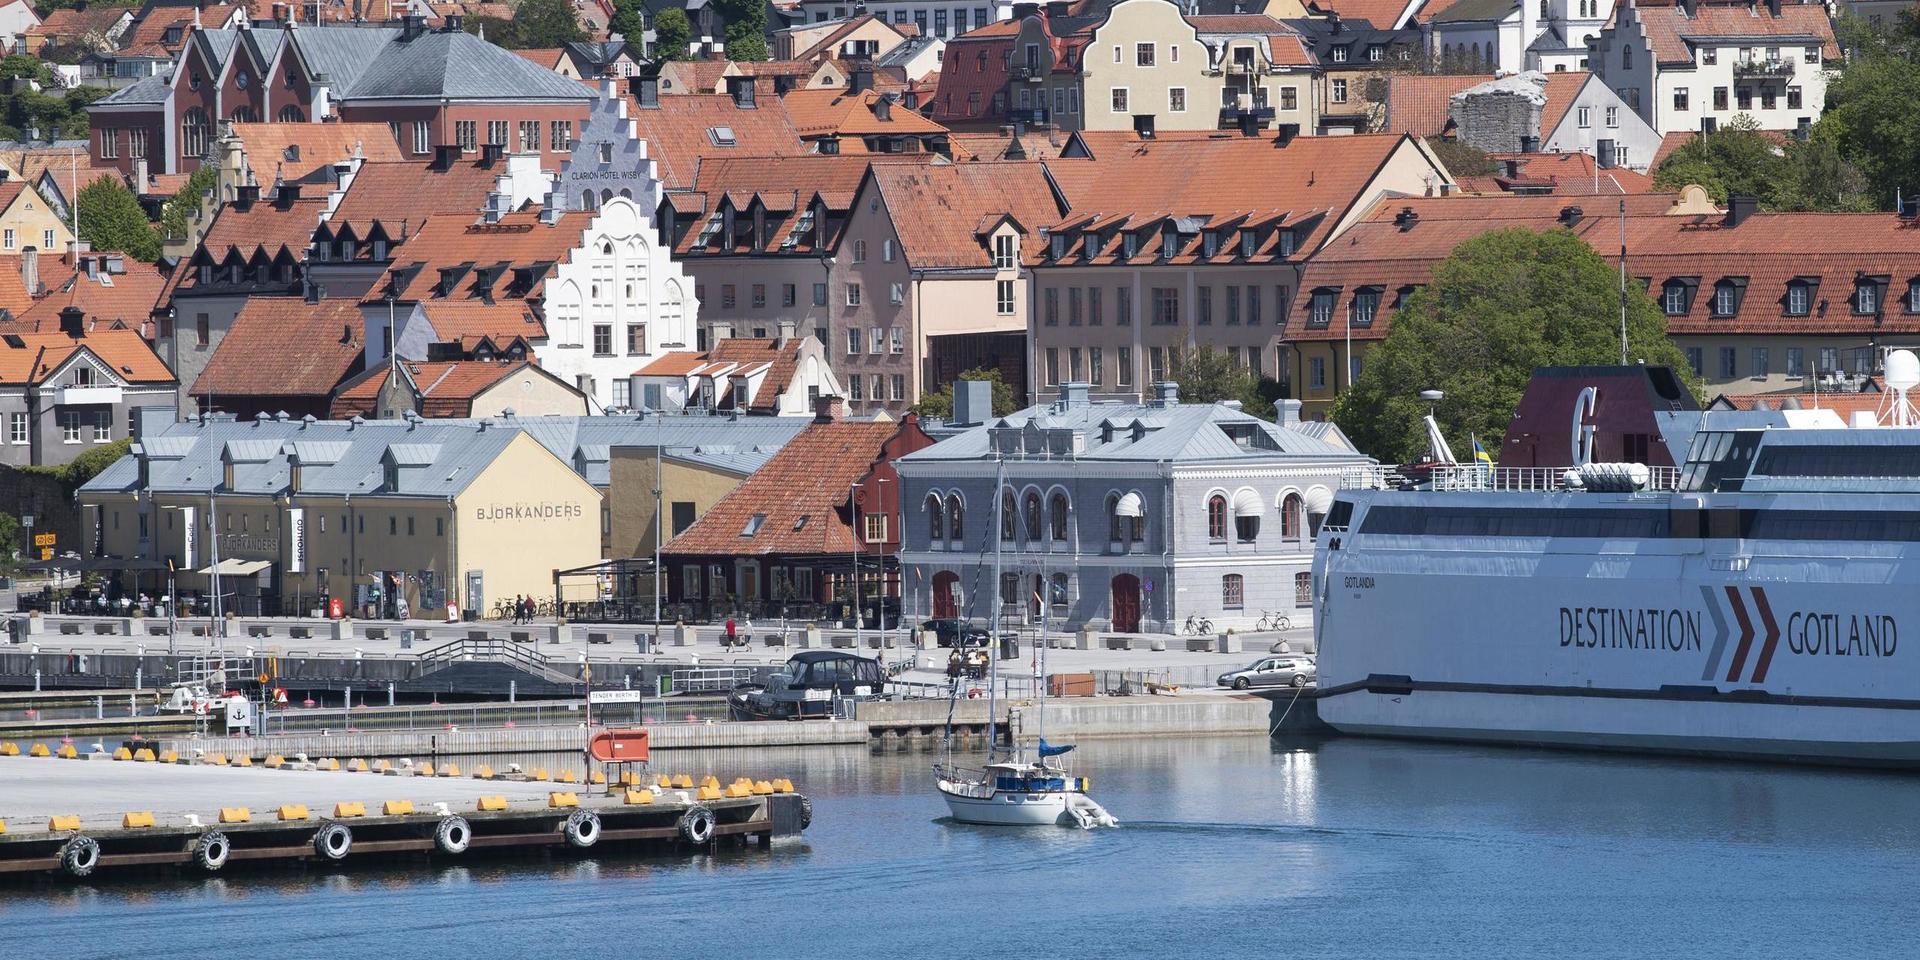 Destination Gotland kör med reducerat antal resenärer. 